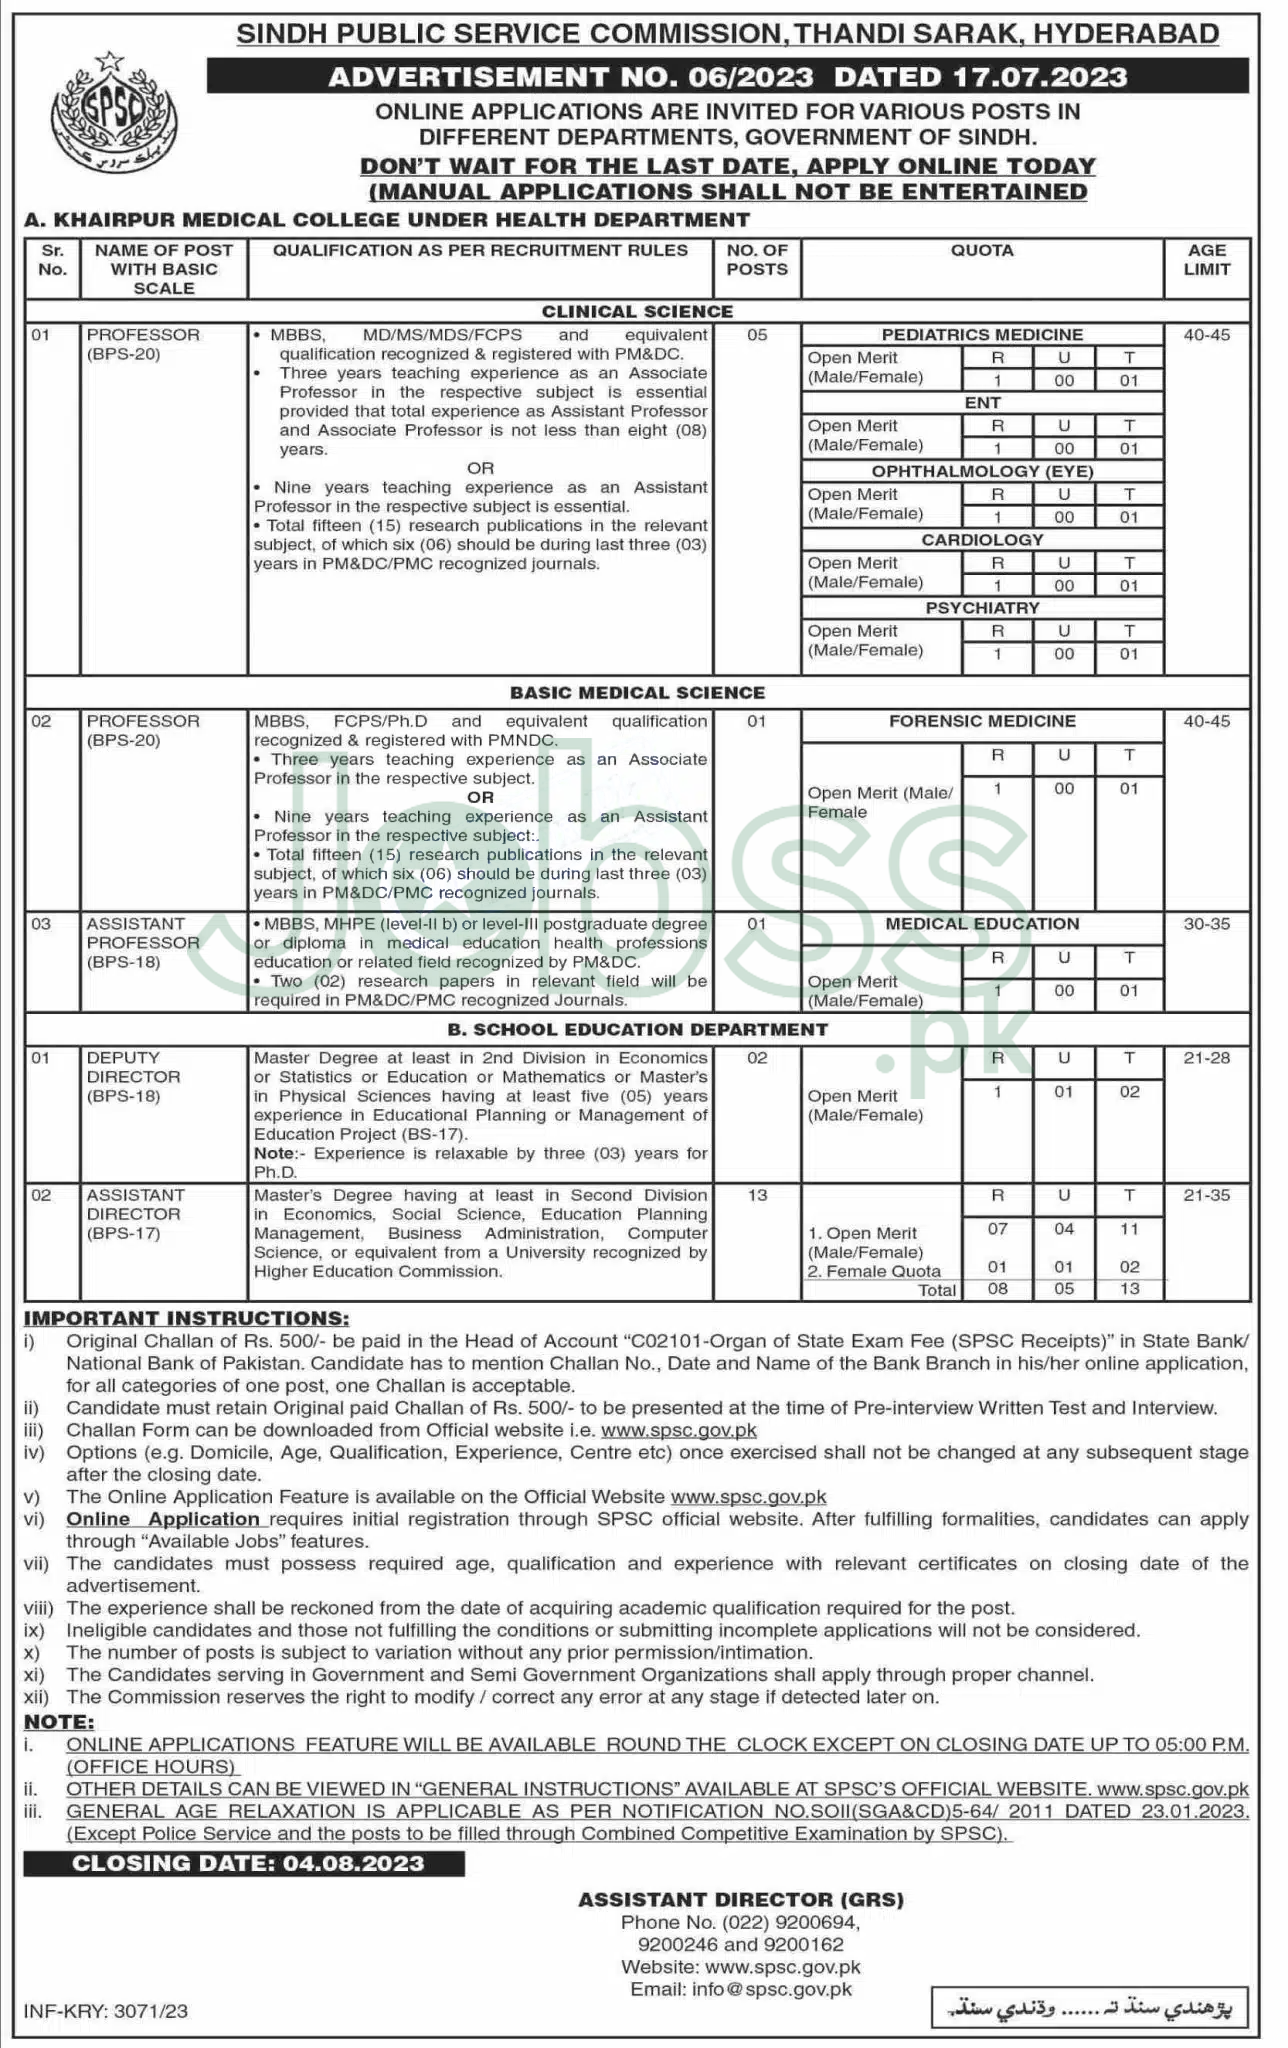 SPSC Jobs 2023 Online Apply at spsc.gov.pk